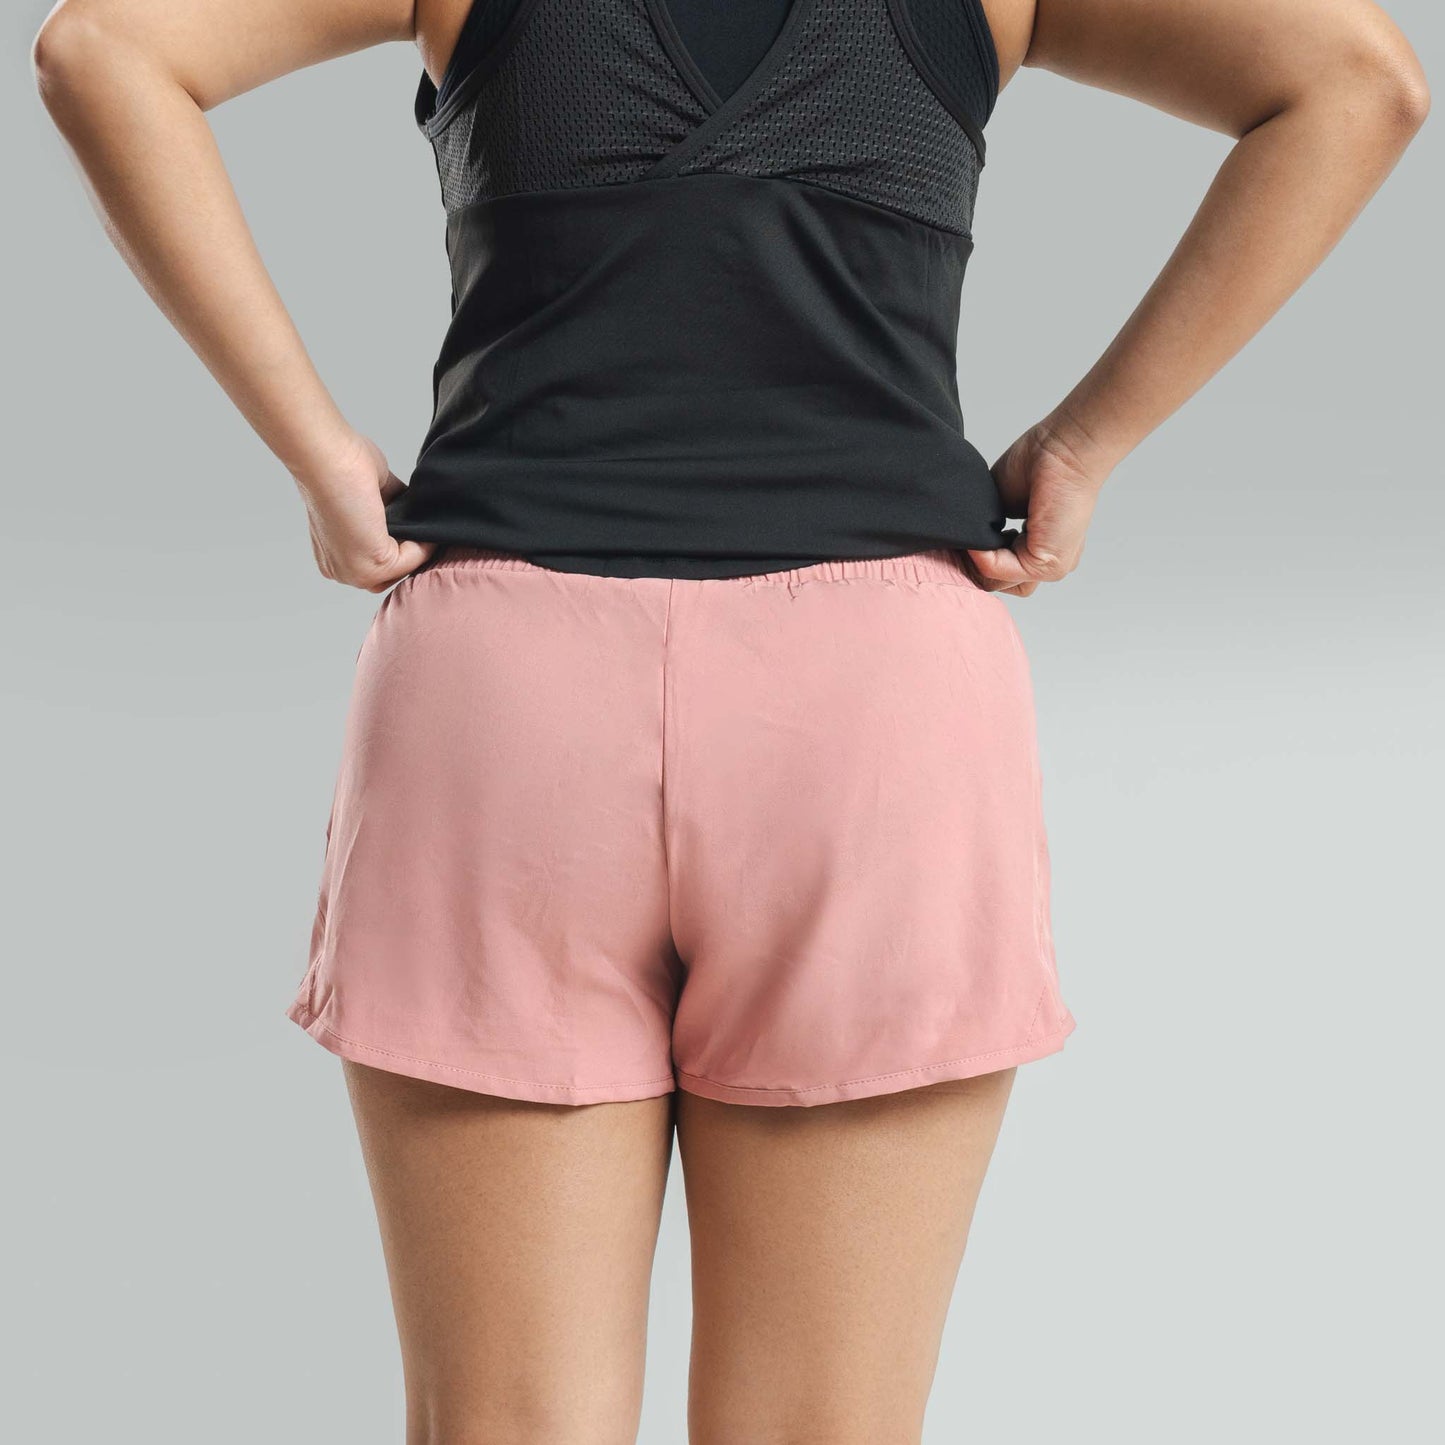 Ladies Squat Shorts